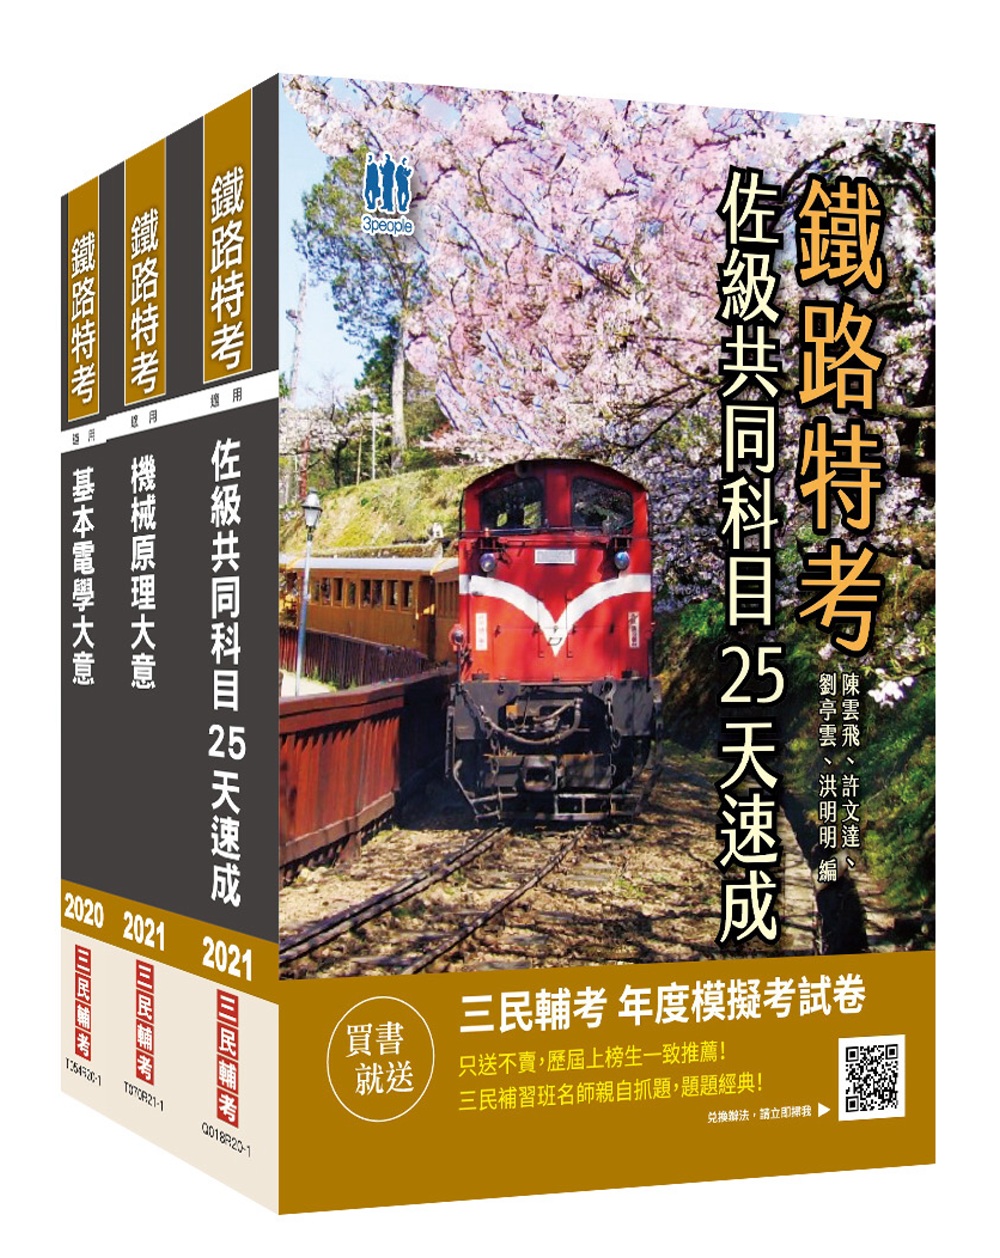 2021鐵路佐級[機檢工程]速成套書(贈公職英文單字[基礎篇])